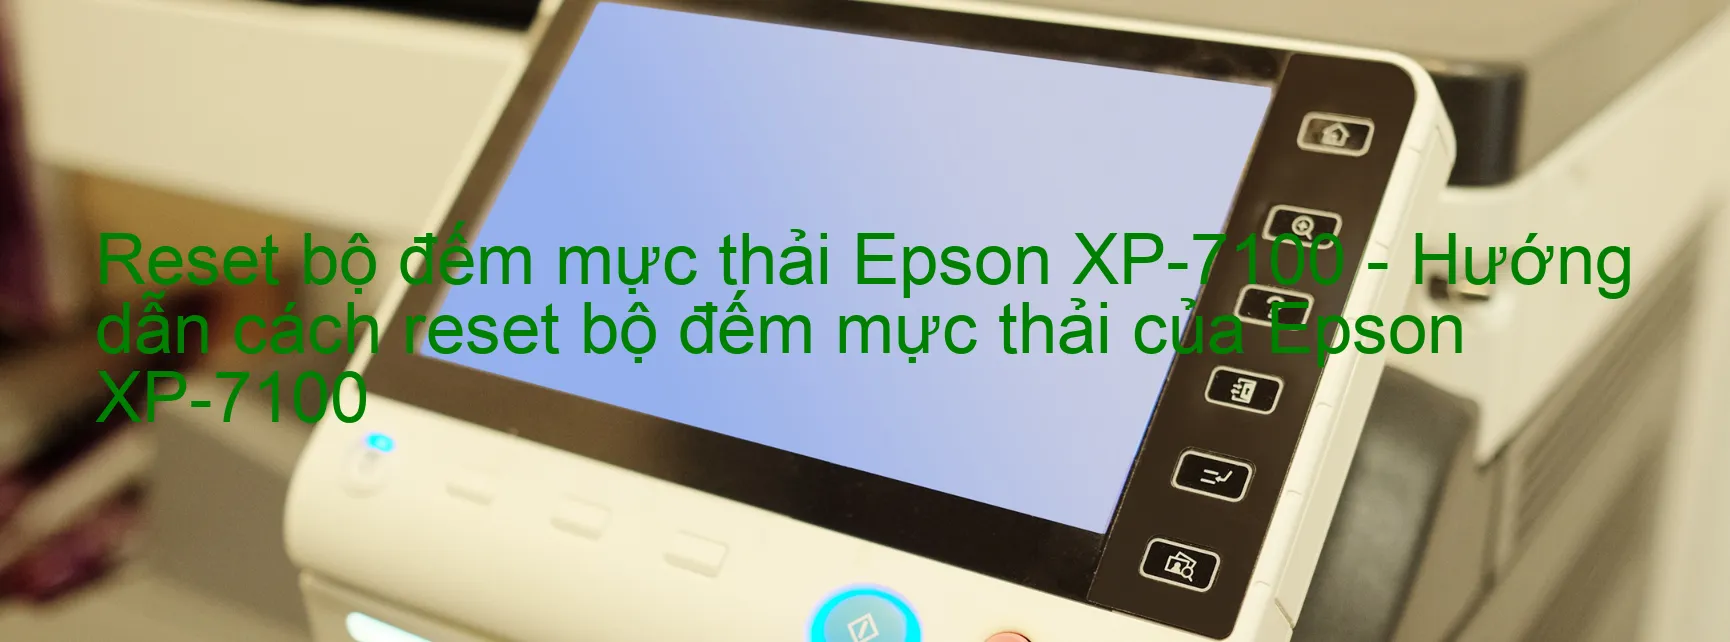 Reset bộ đếm mực thải Epson XP-7100 - Hướng dẫn cách reset bộ đếm mực thải của Epson XP-7100